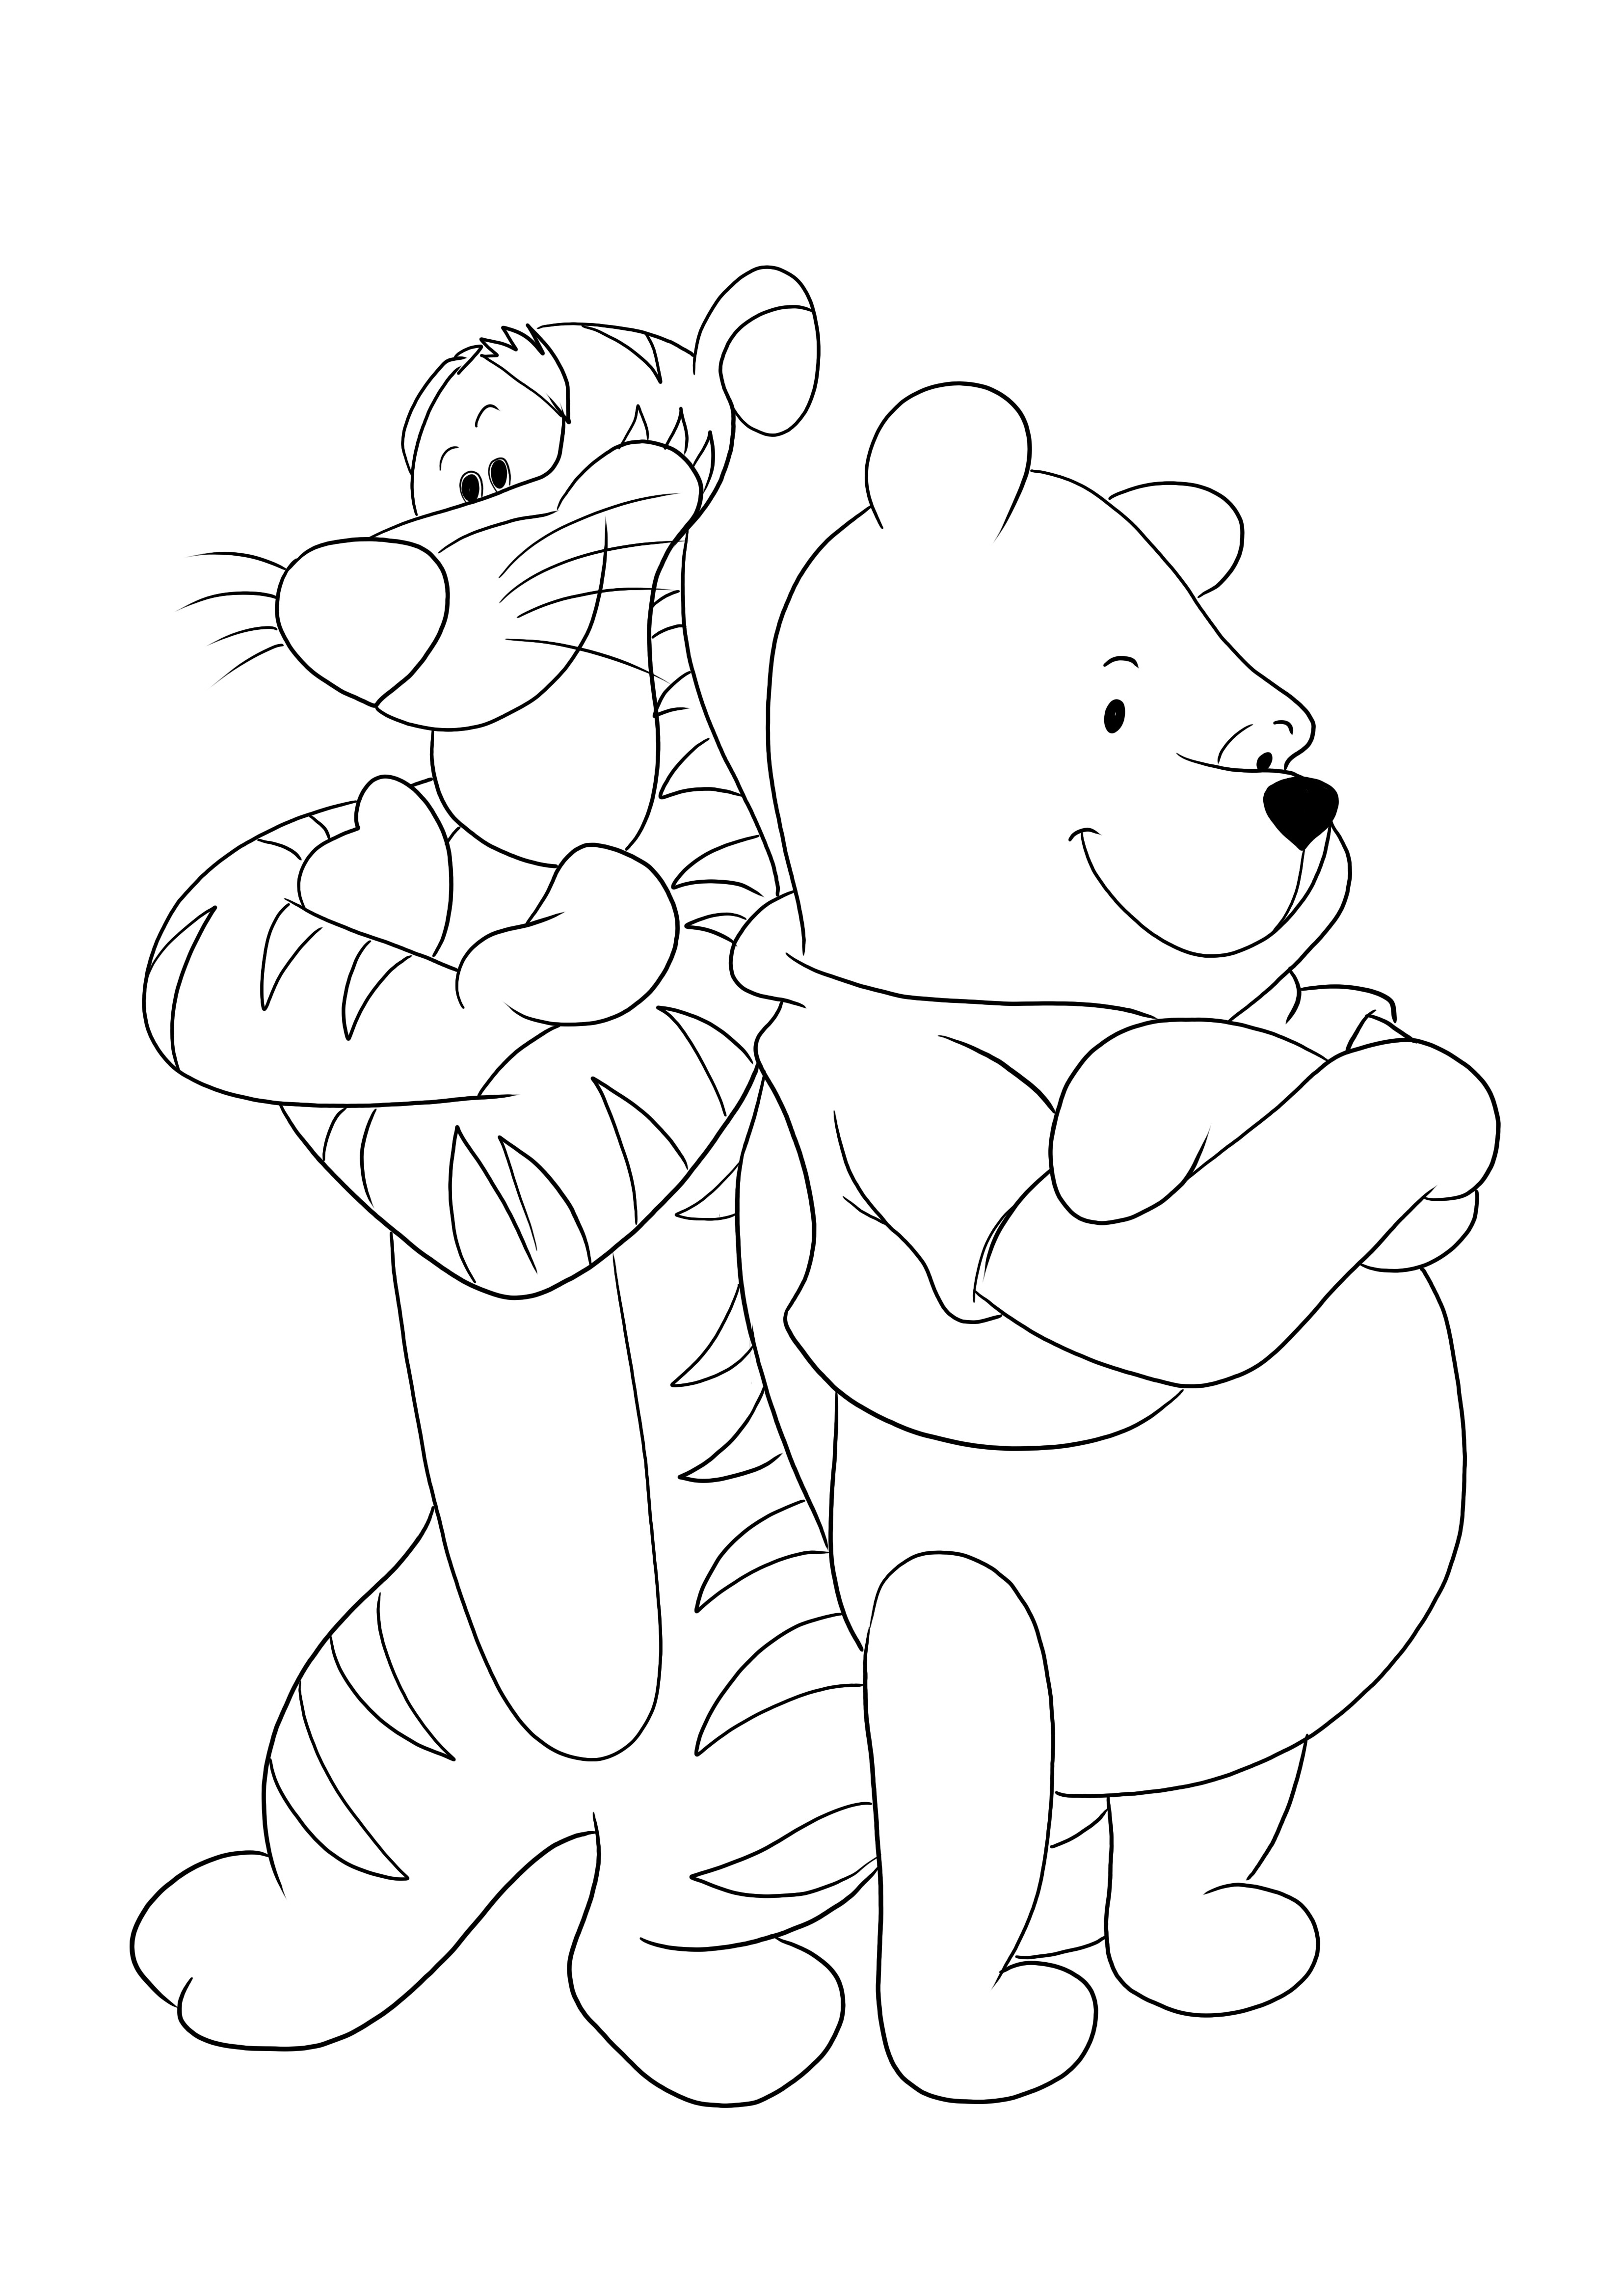 Tiger ve Winnie'nin kolları kavuşturuldu - çocukların ücretsiz olarak yazdırıp renklendirebileceği eğlenceli bir boyama sayfası